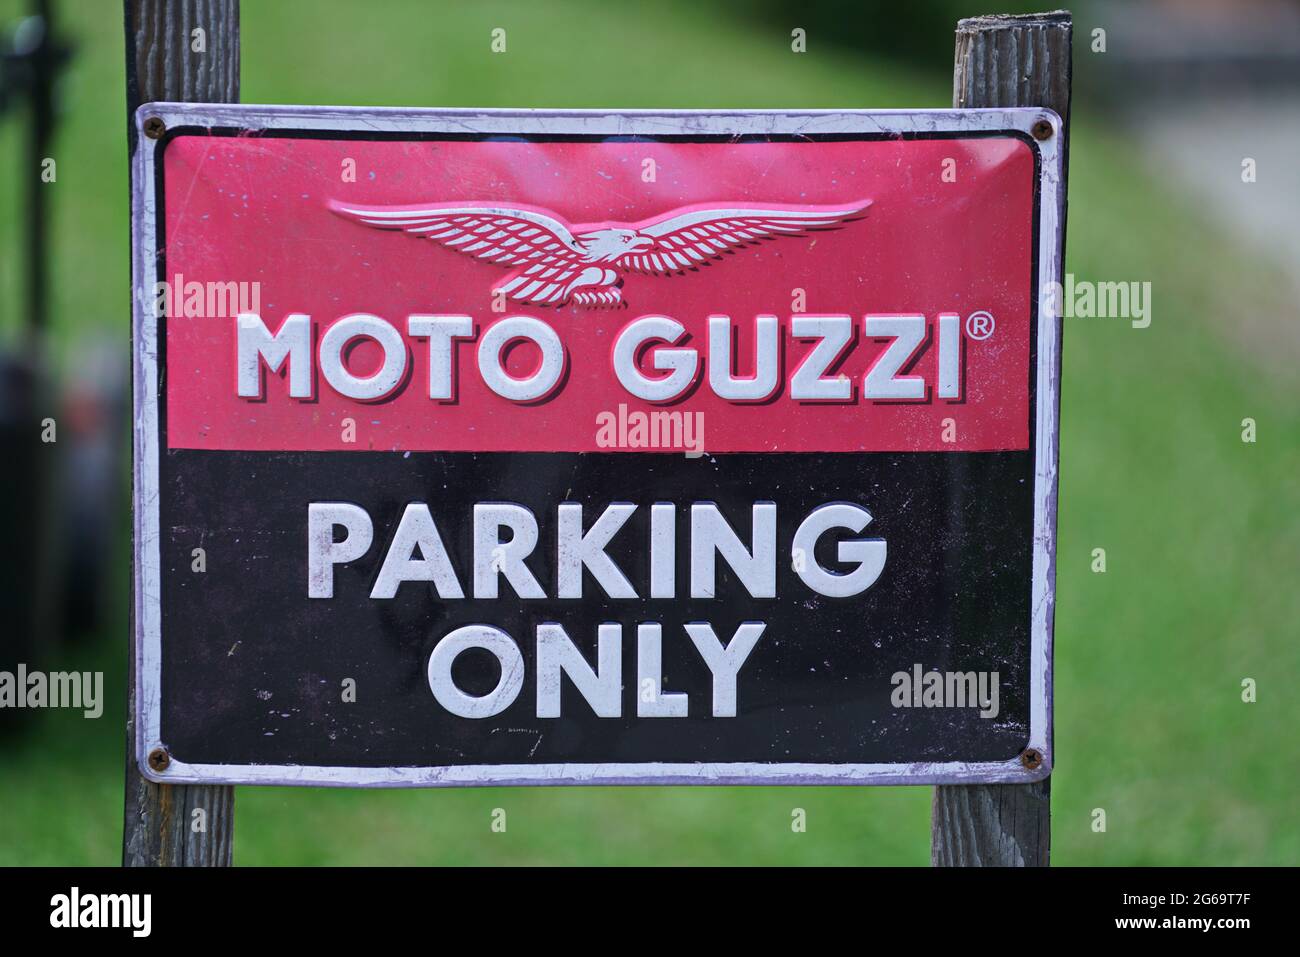 Primo piano del cartello Moto Guzzi solo parcheggio. Milano, Italia - Luglio 2021 Foto Stock